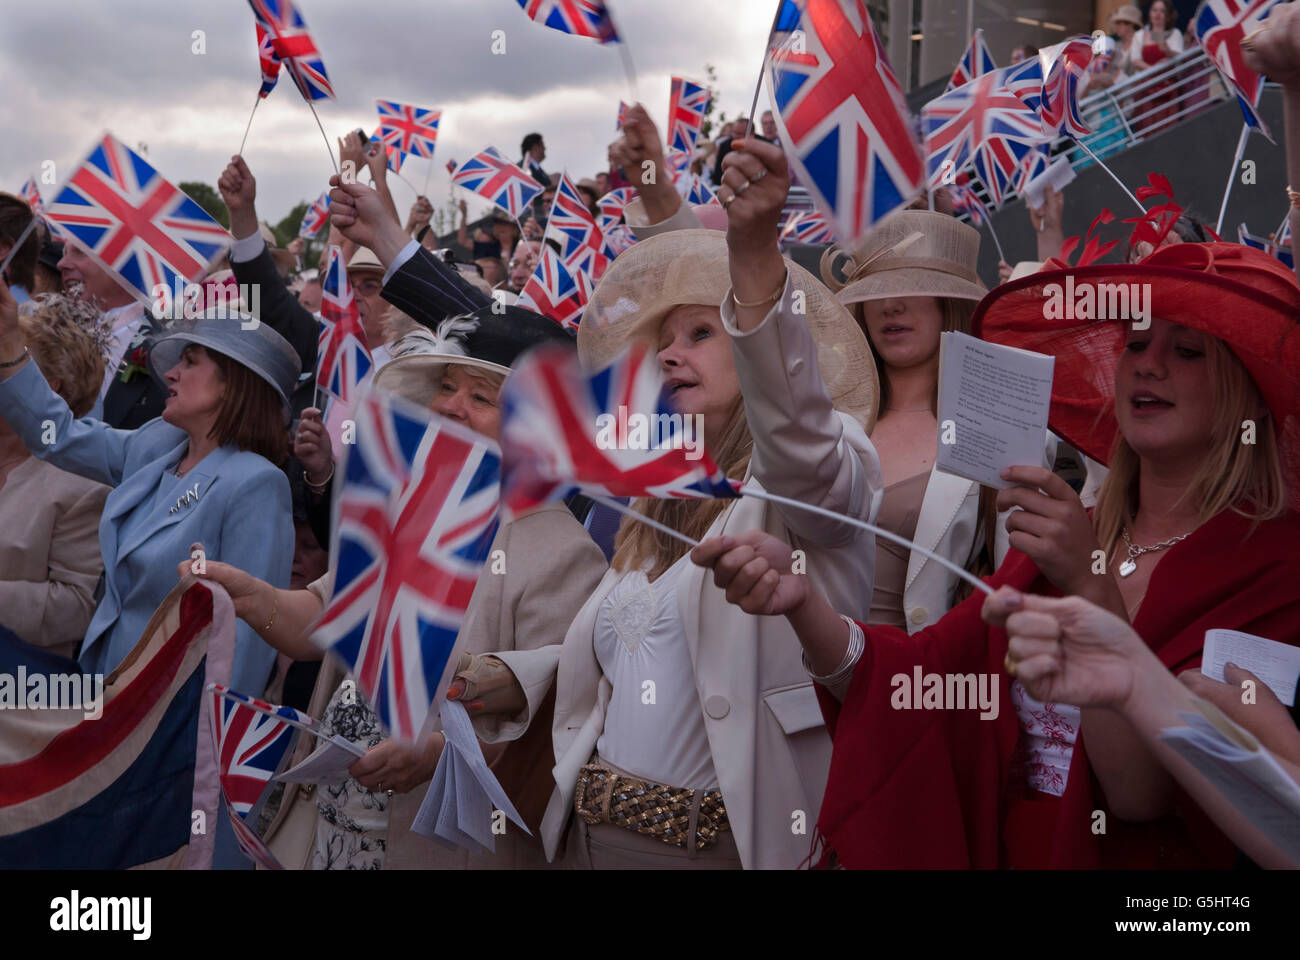 Land of Hope and Glory et Rule Britannia chansons patriotiques anglaises chantées, brandissant Union Jack Flags à la fin des jours sur le stand du groupe. Royal Ascot 2016 2010 Royaume-Uni HOMER SYKES Banque D'Images